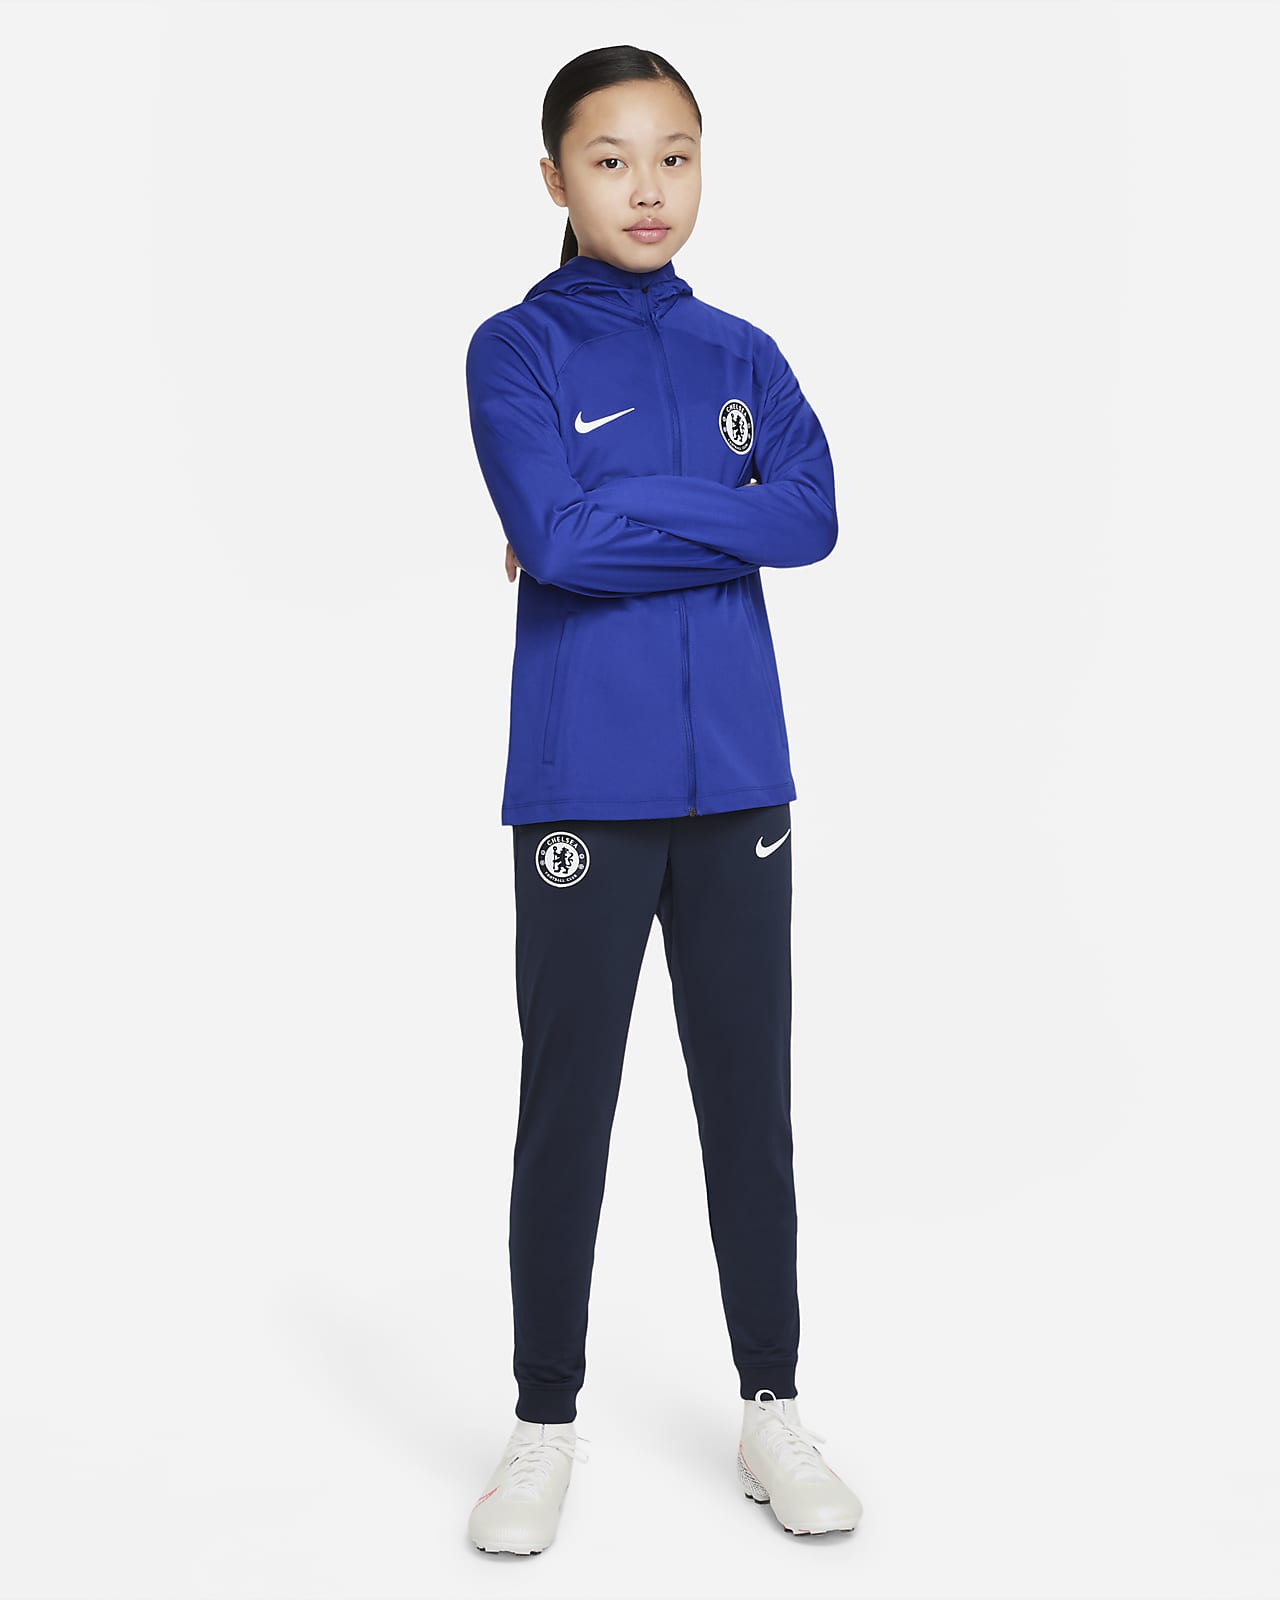 Pleteninová fotbalová souprava Nike Dri-FIT Chelsea FC Strike pro větší děti